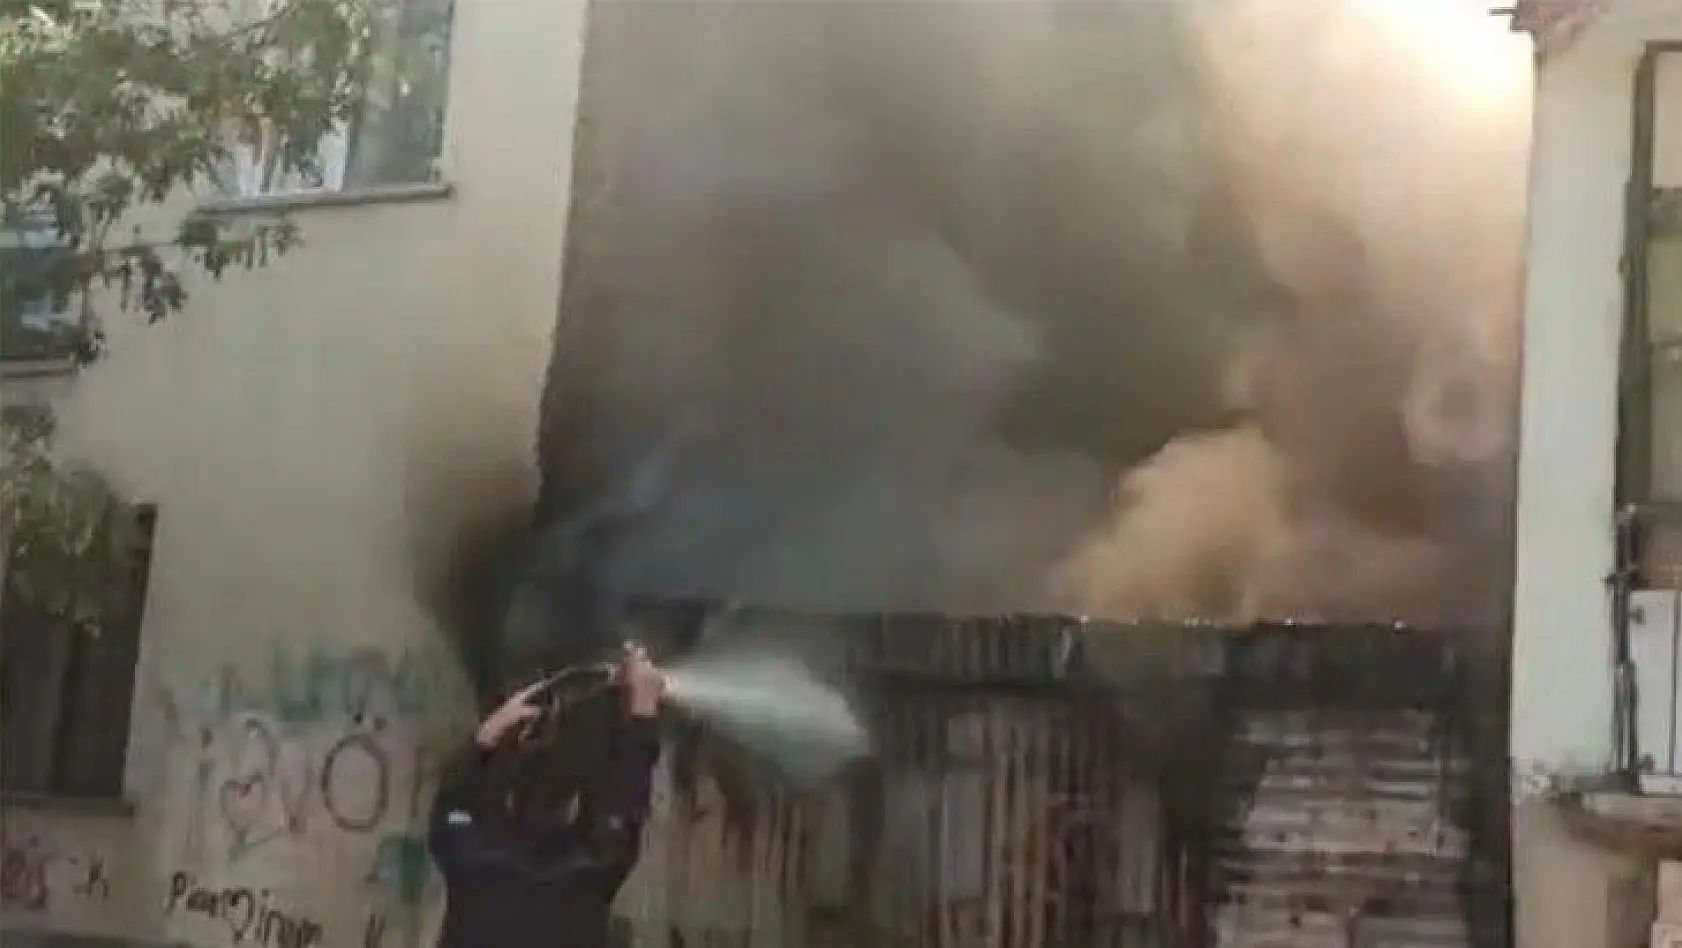 Elazığ'da baraka yandı, iki binaya sıçraması ekiplerin müdahalesiyle engellendi